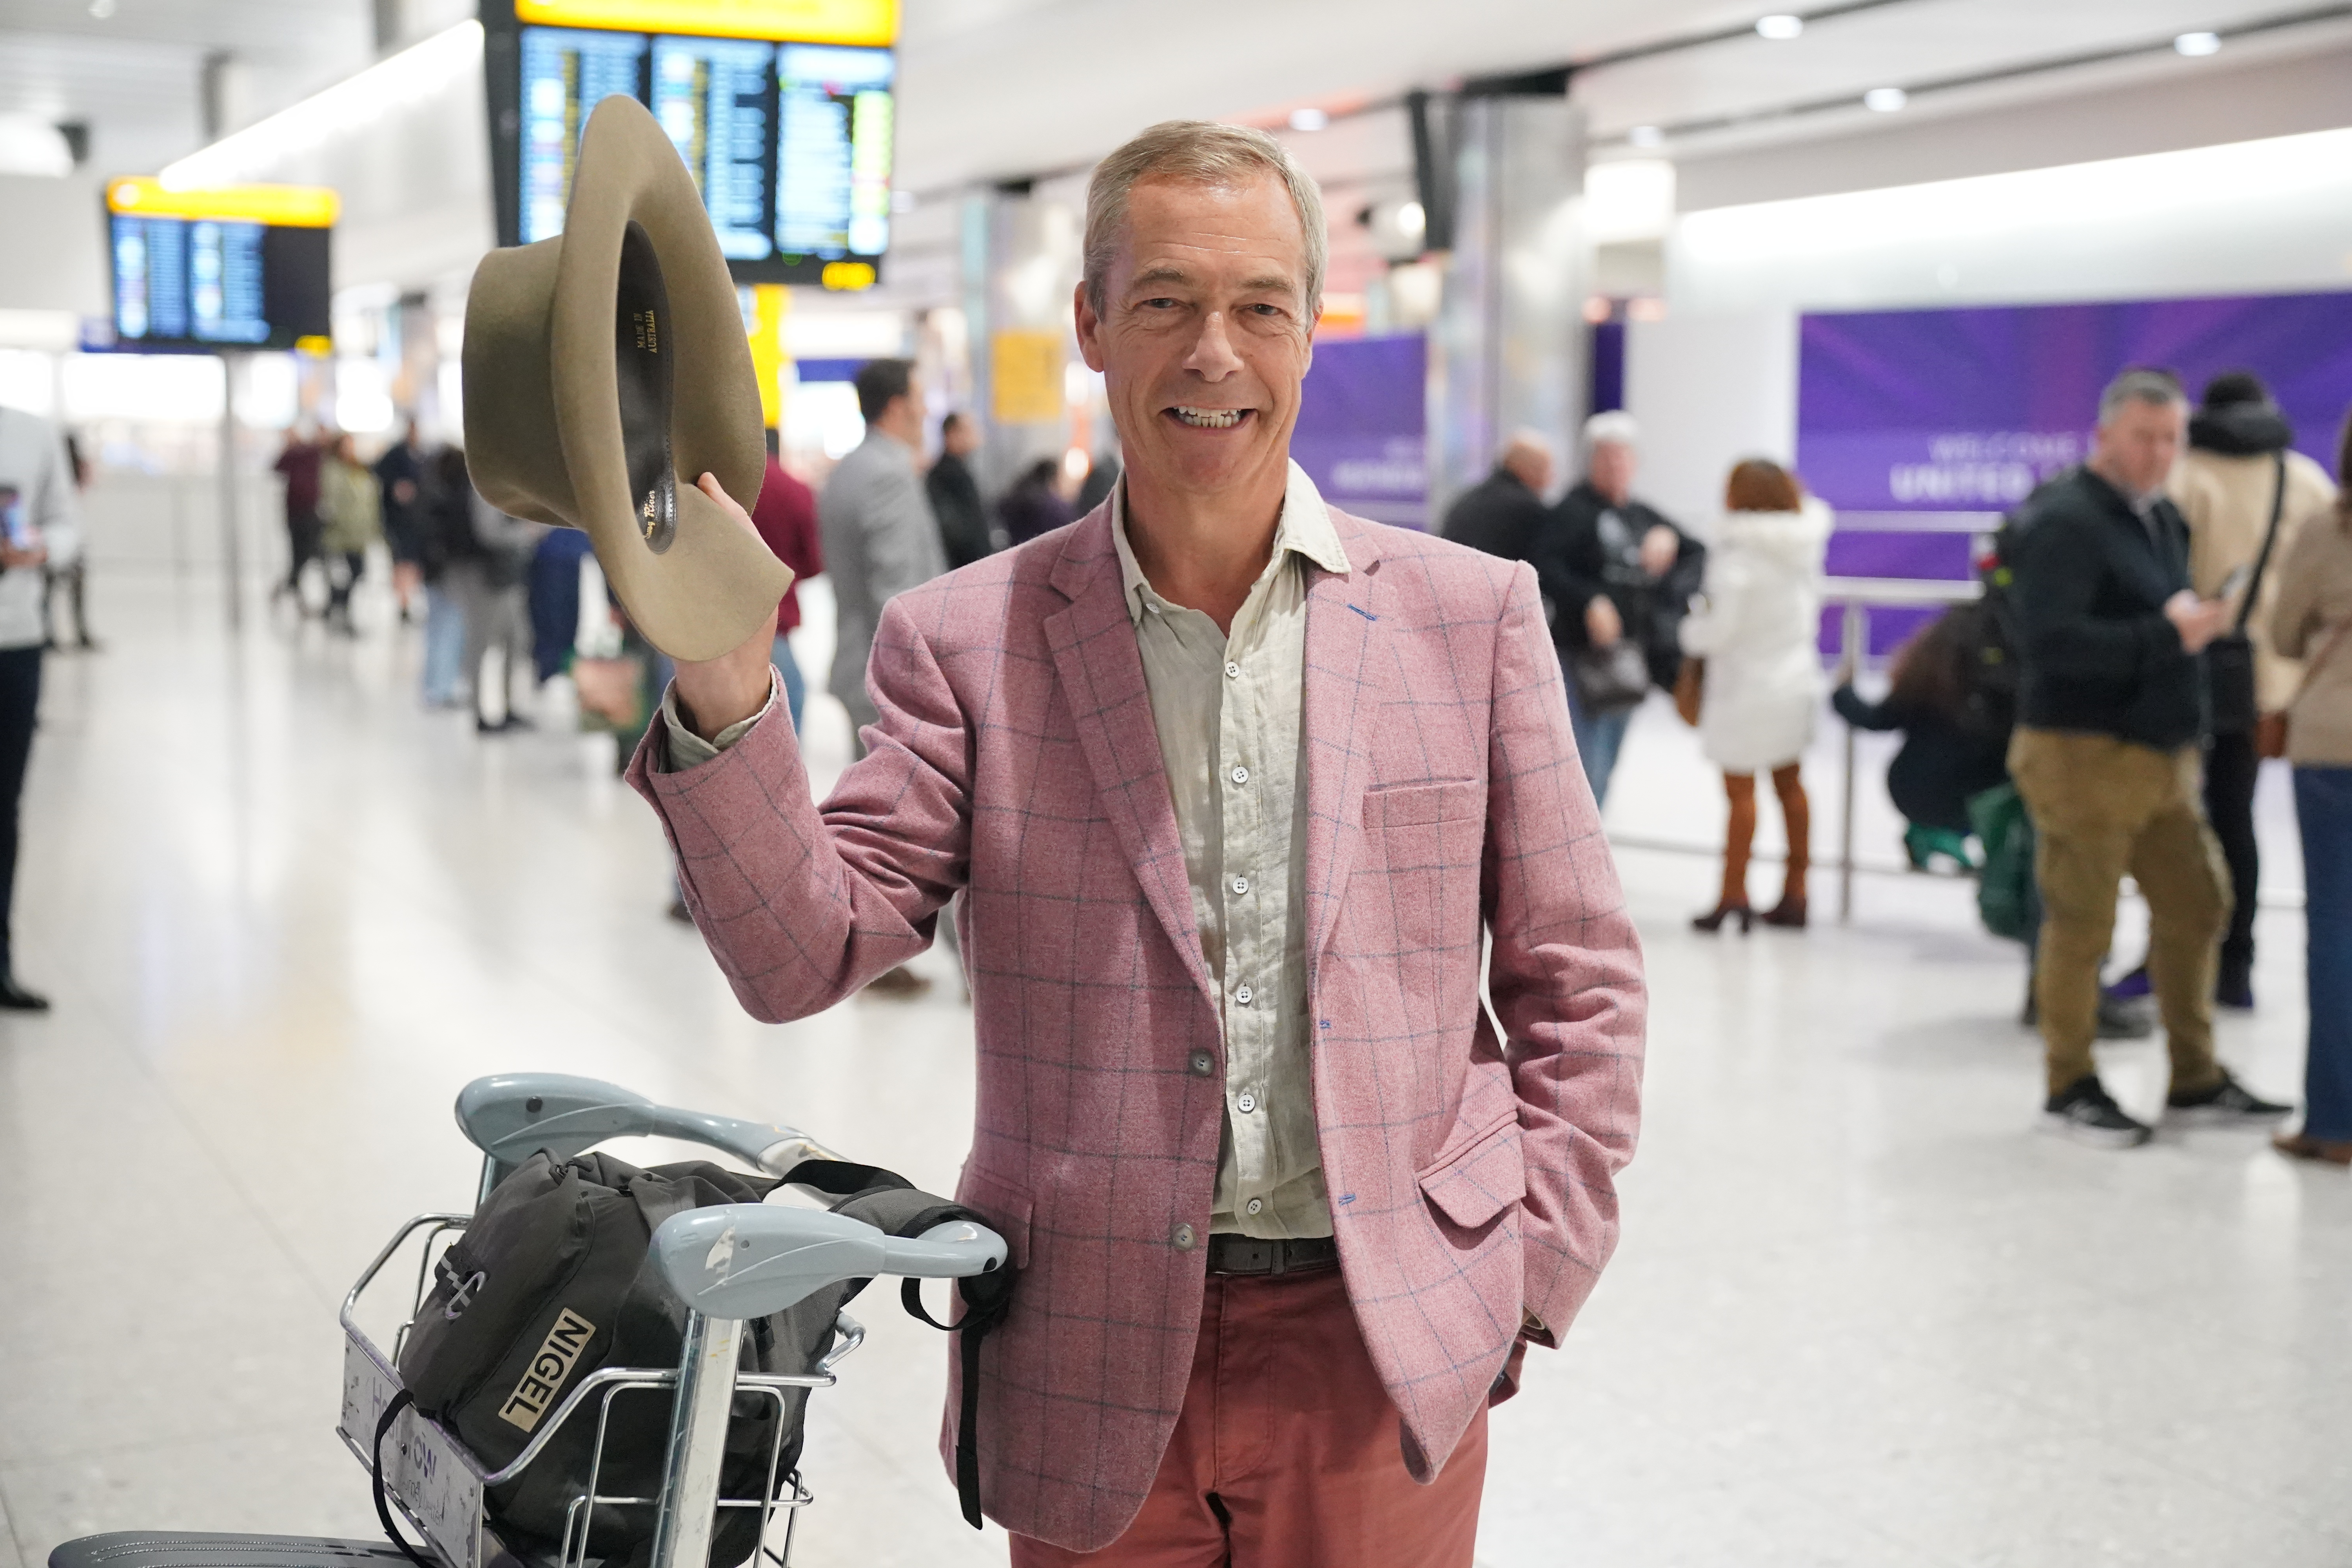 Nach ihren zahlreichen Auseinandersetzungen hat Nella den Politiker Nigel Farage brüskiert